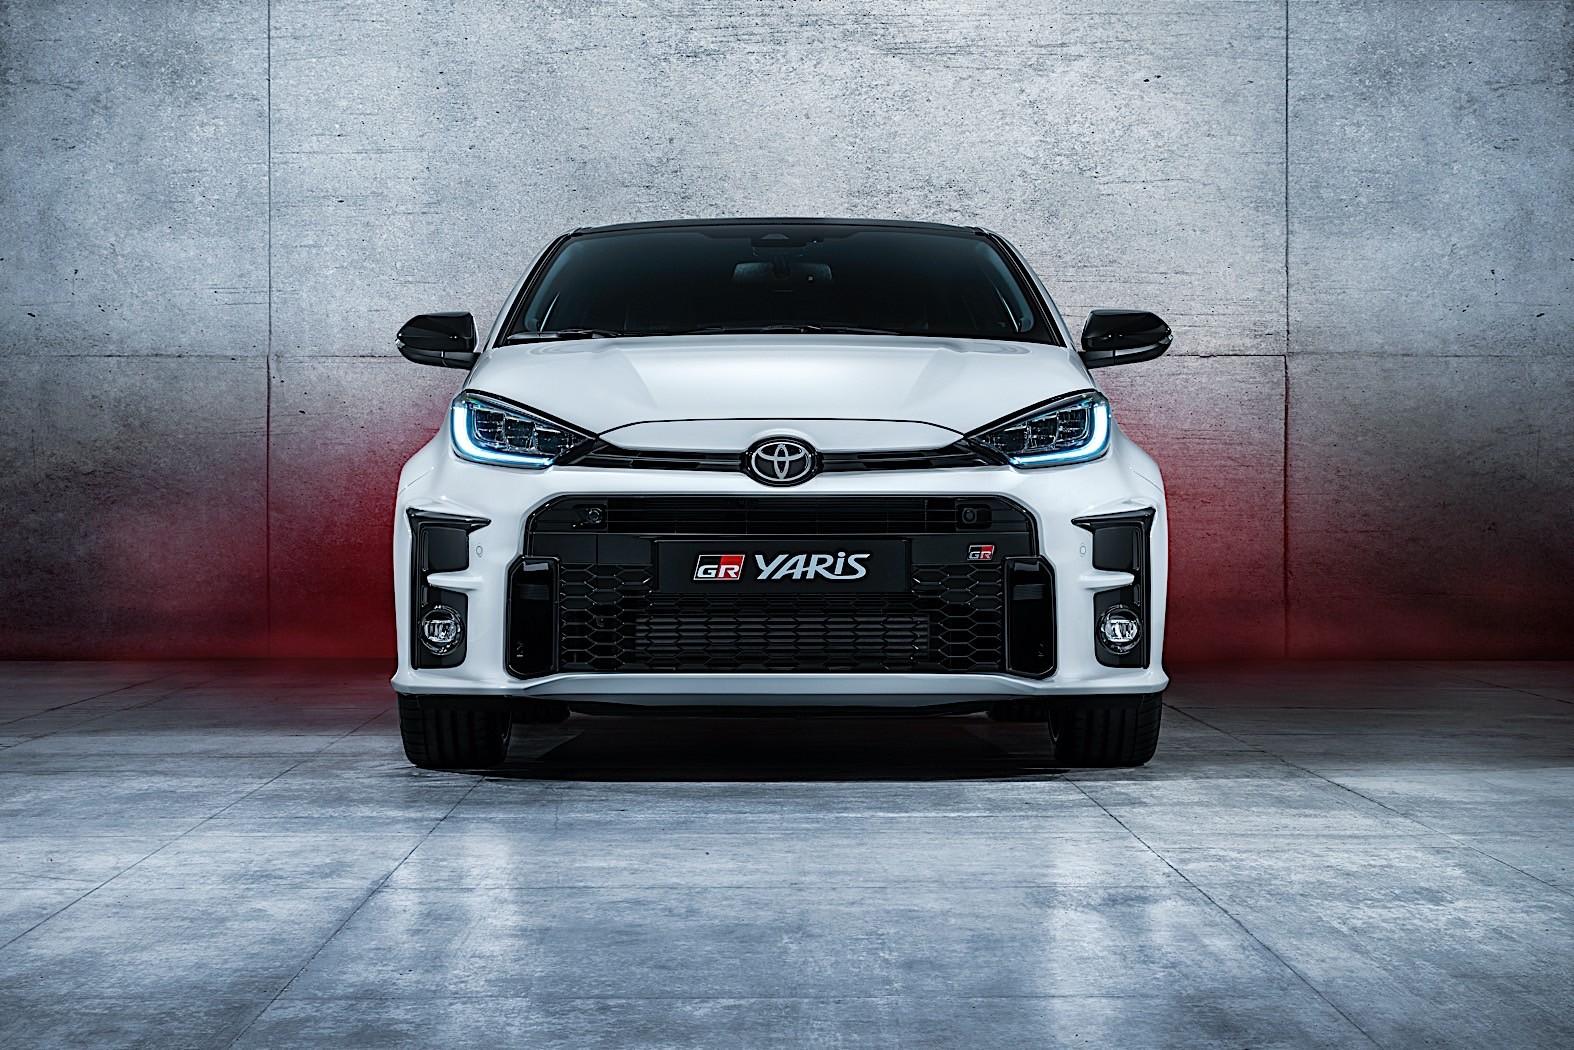 เอาจริง! Toyota Yaris SUV อเนกประสงค์ใหม่เตรียมประเดิมขายในยุโรปปีนี้